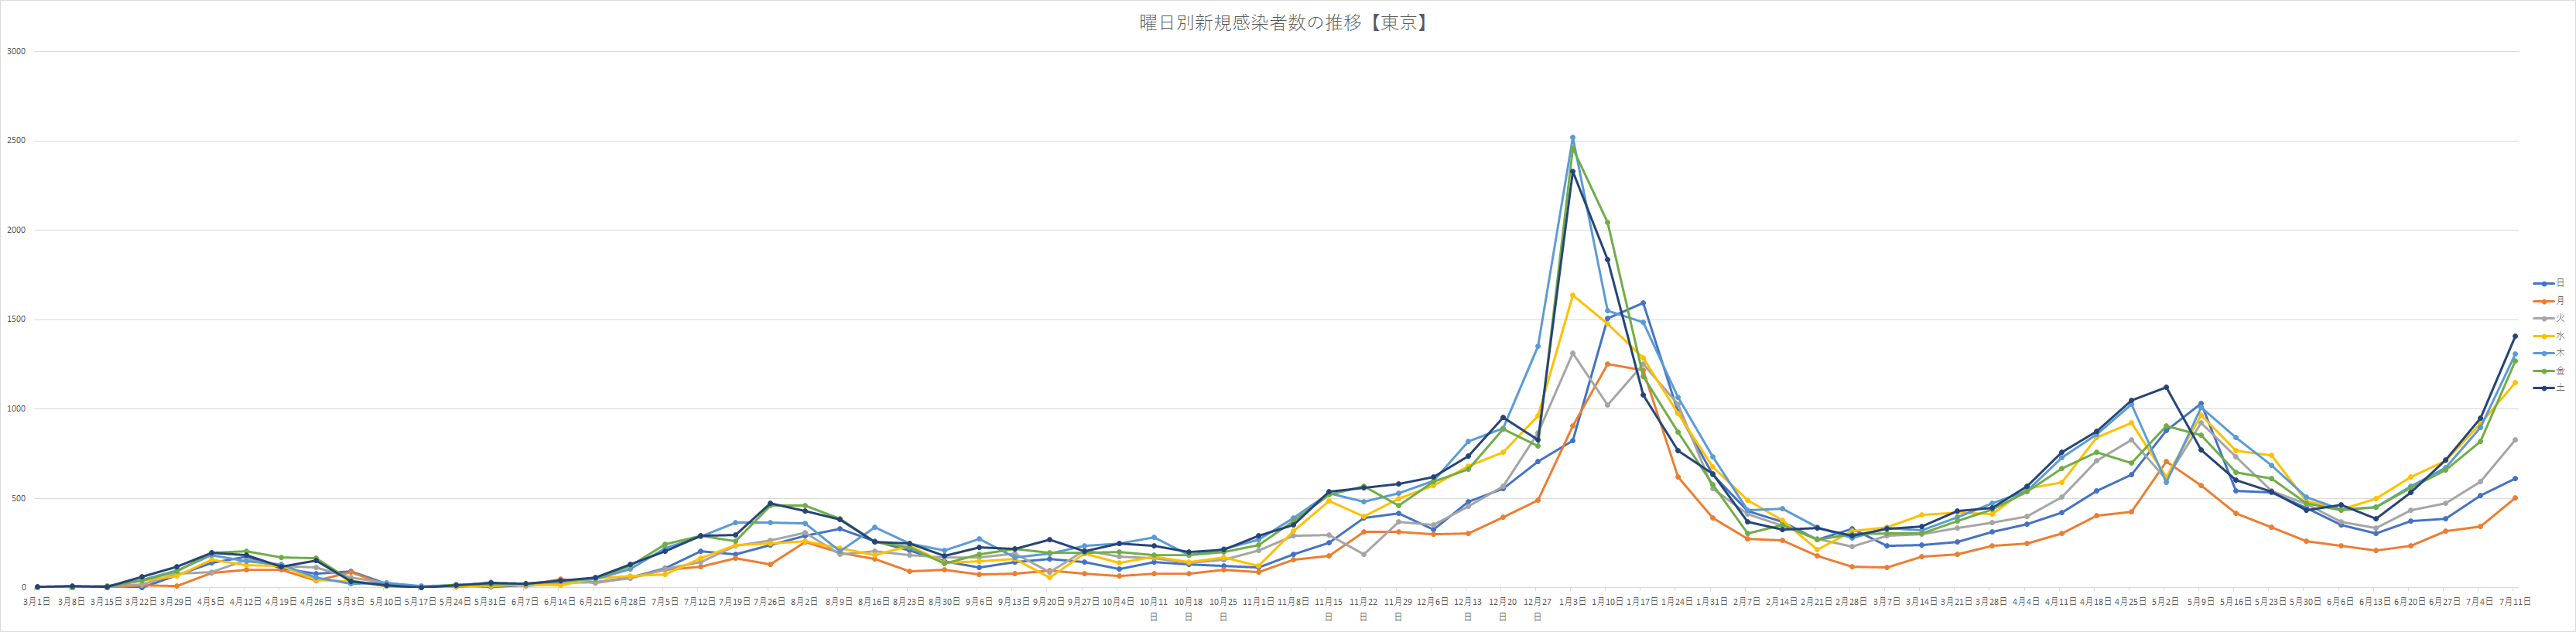 東京都曜日別感染者数をグラフ推移で 過去最多を更新しているのは何曜日が多い Curlpingの幸せblog